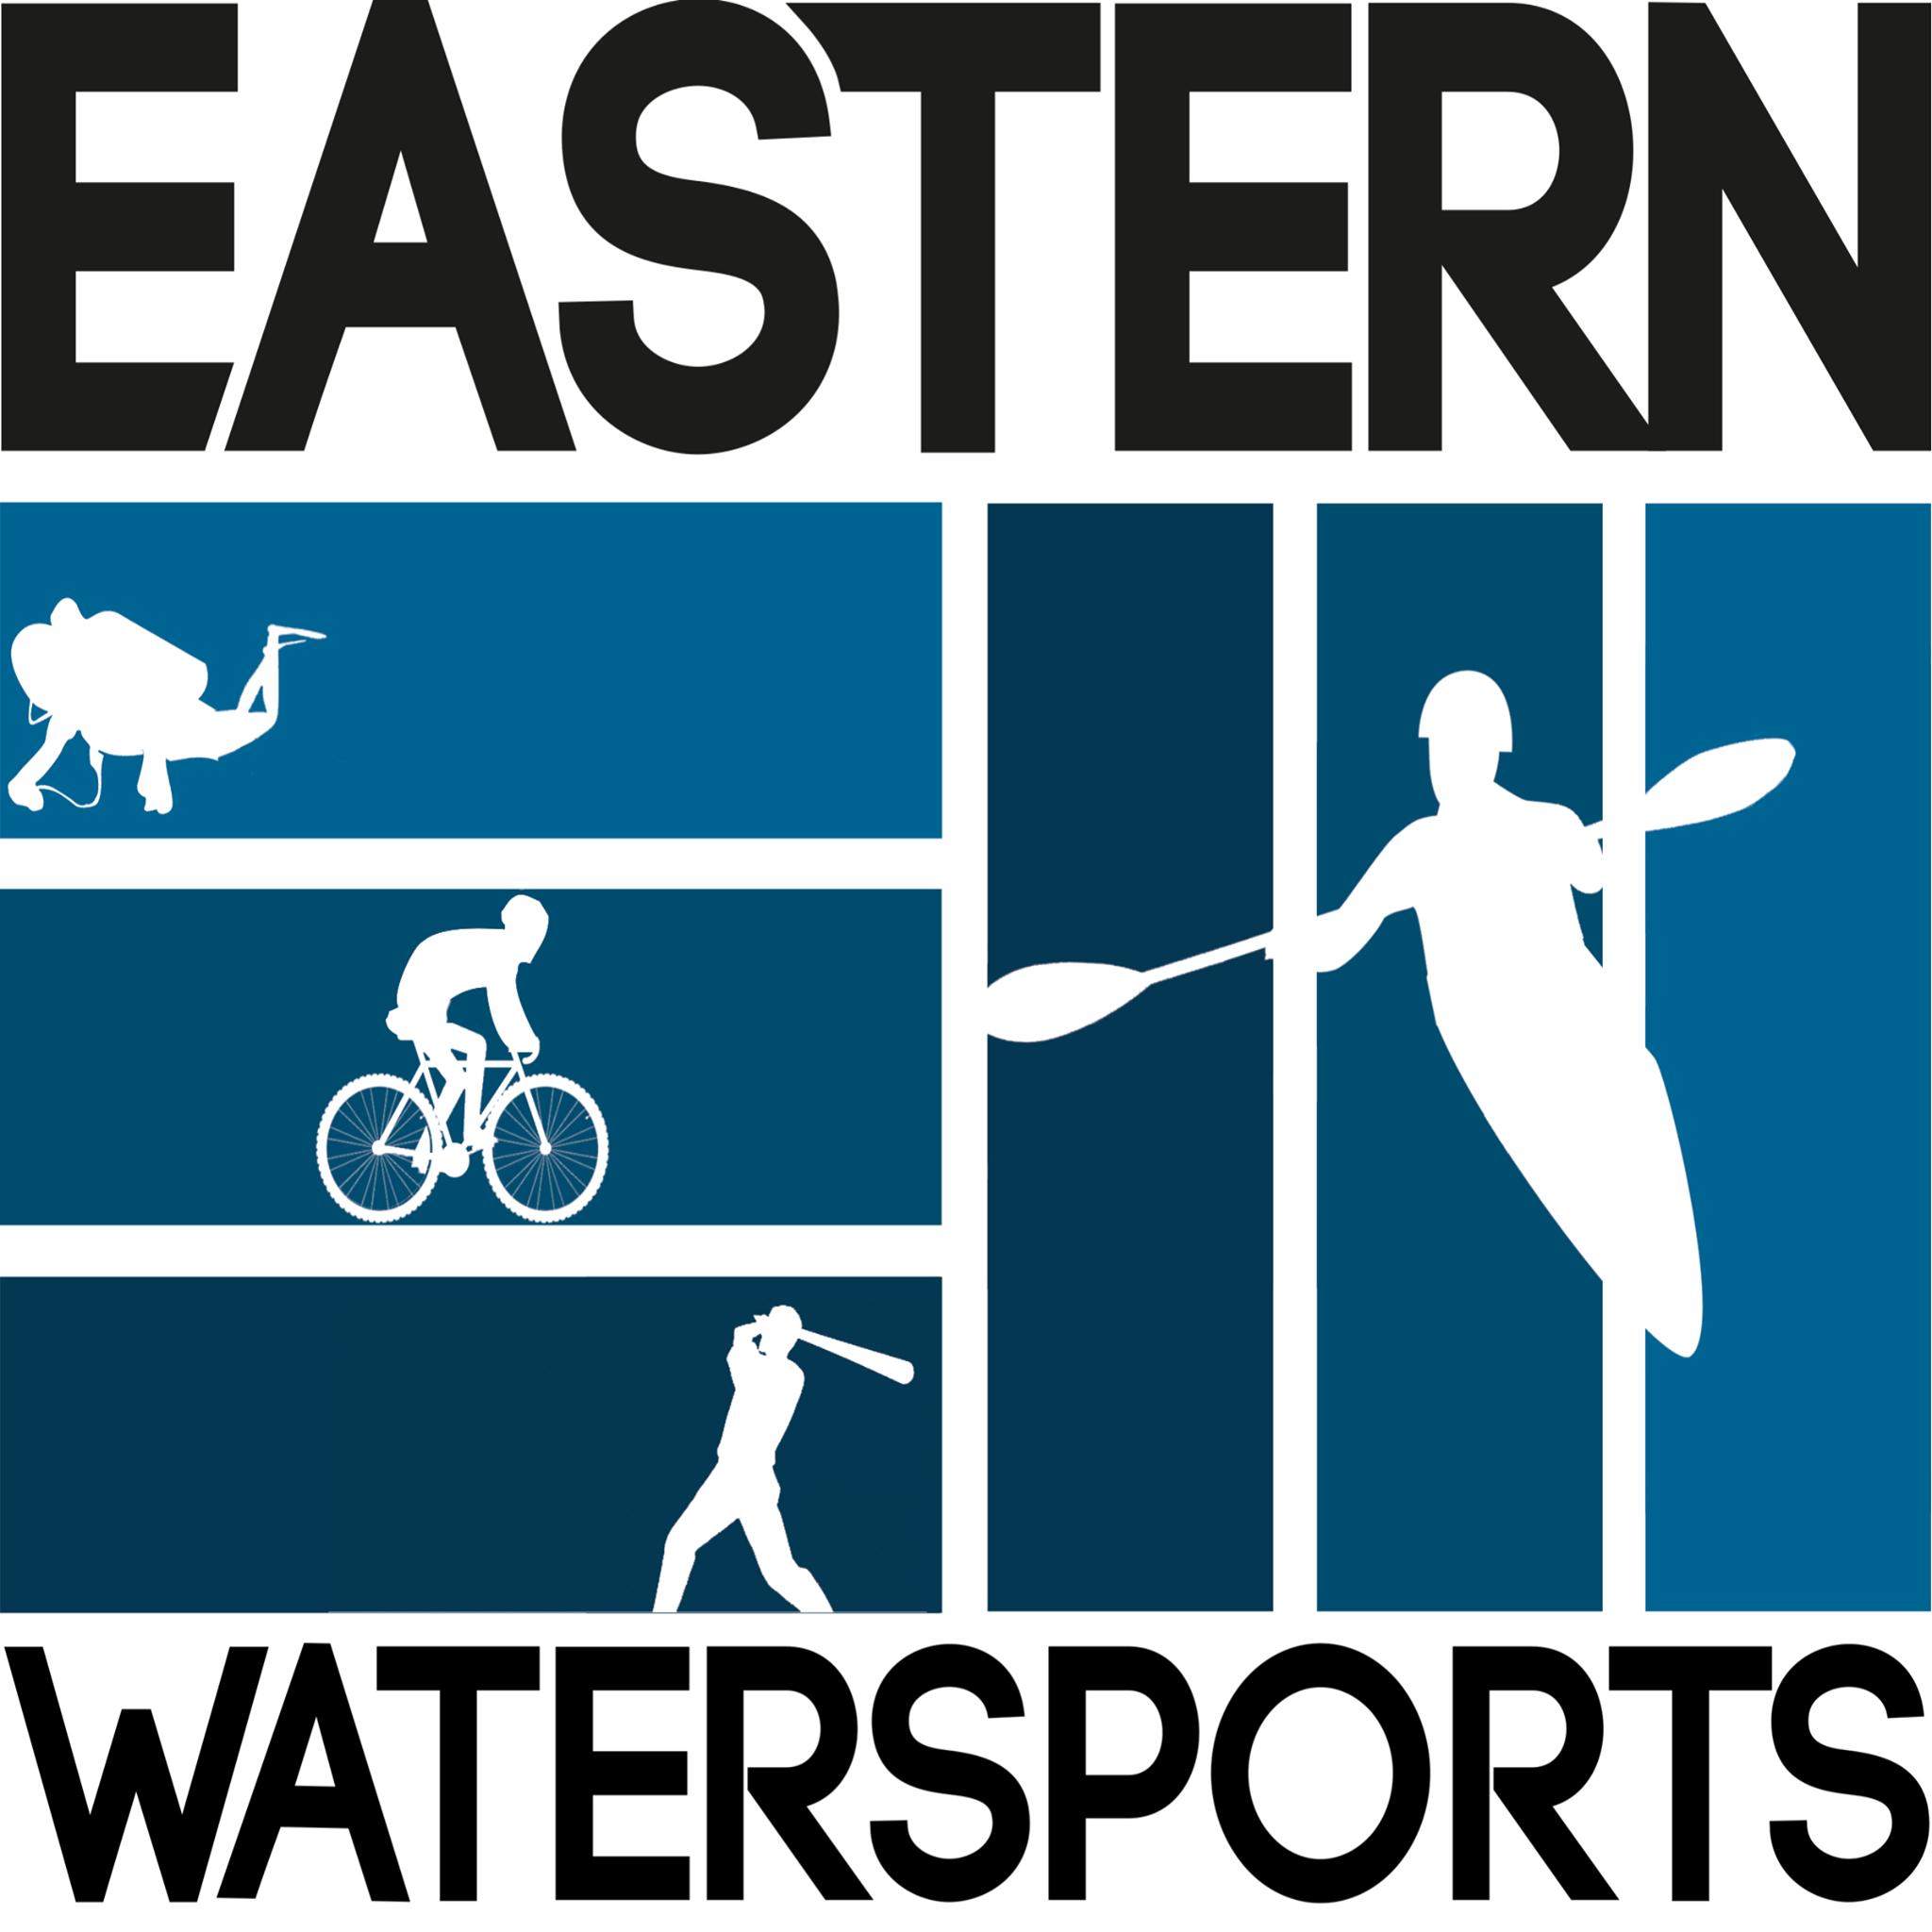 Eastern Watersports at Hammerman Beach